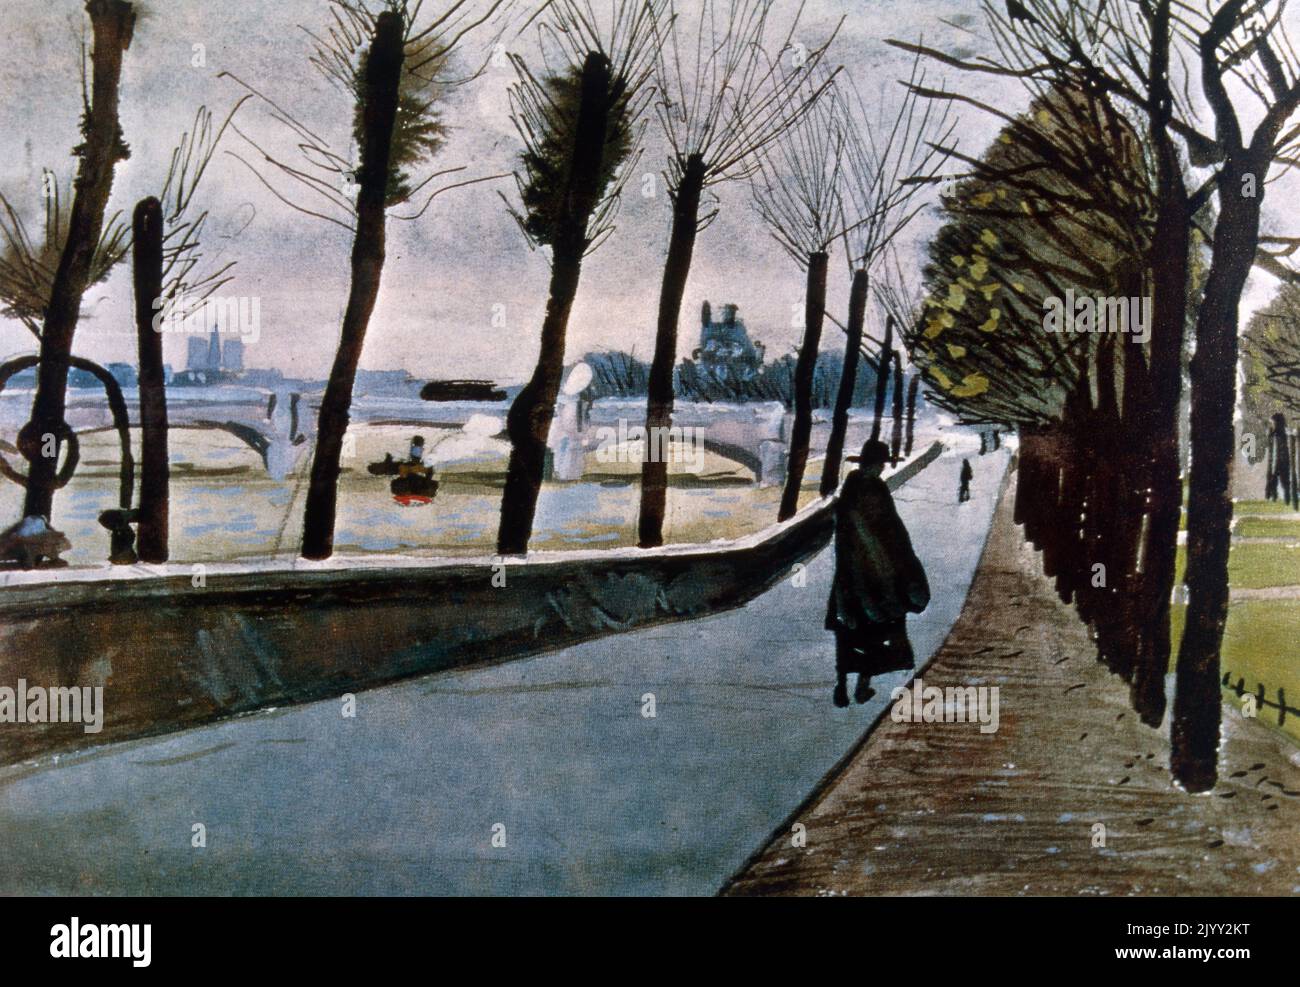 Quai du Louvre (1906), Paris, par Albert Marquet (1875 - 1947), peintre français, associé au mouvement Fauvist. Huile sur toile Banque D'Images